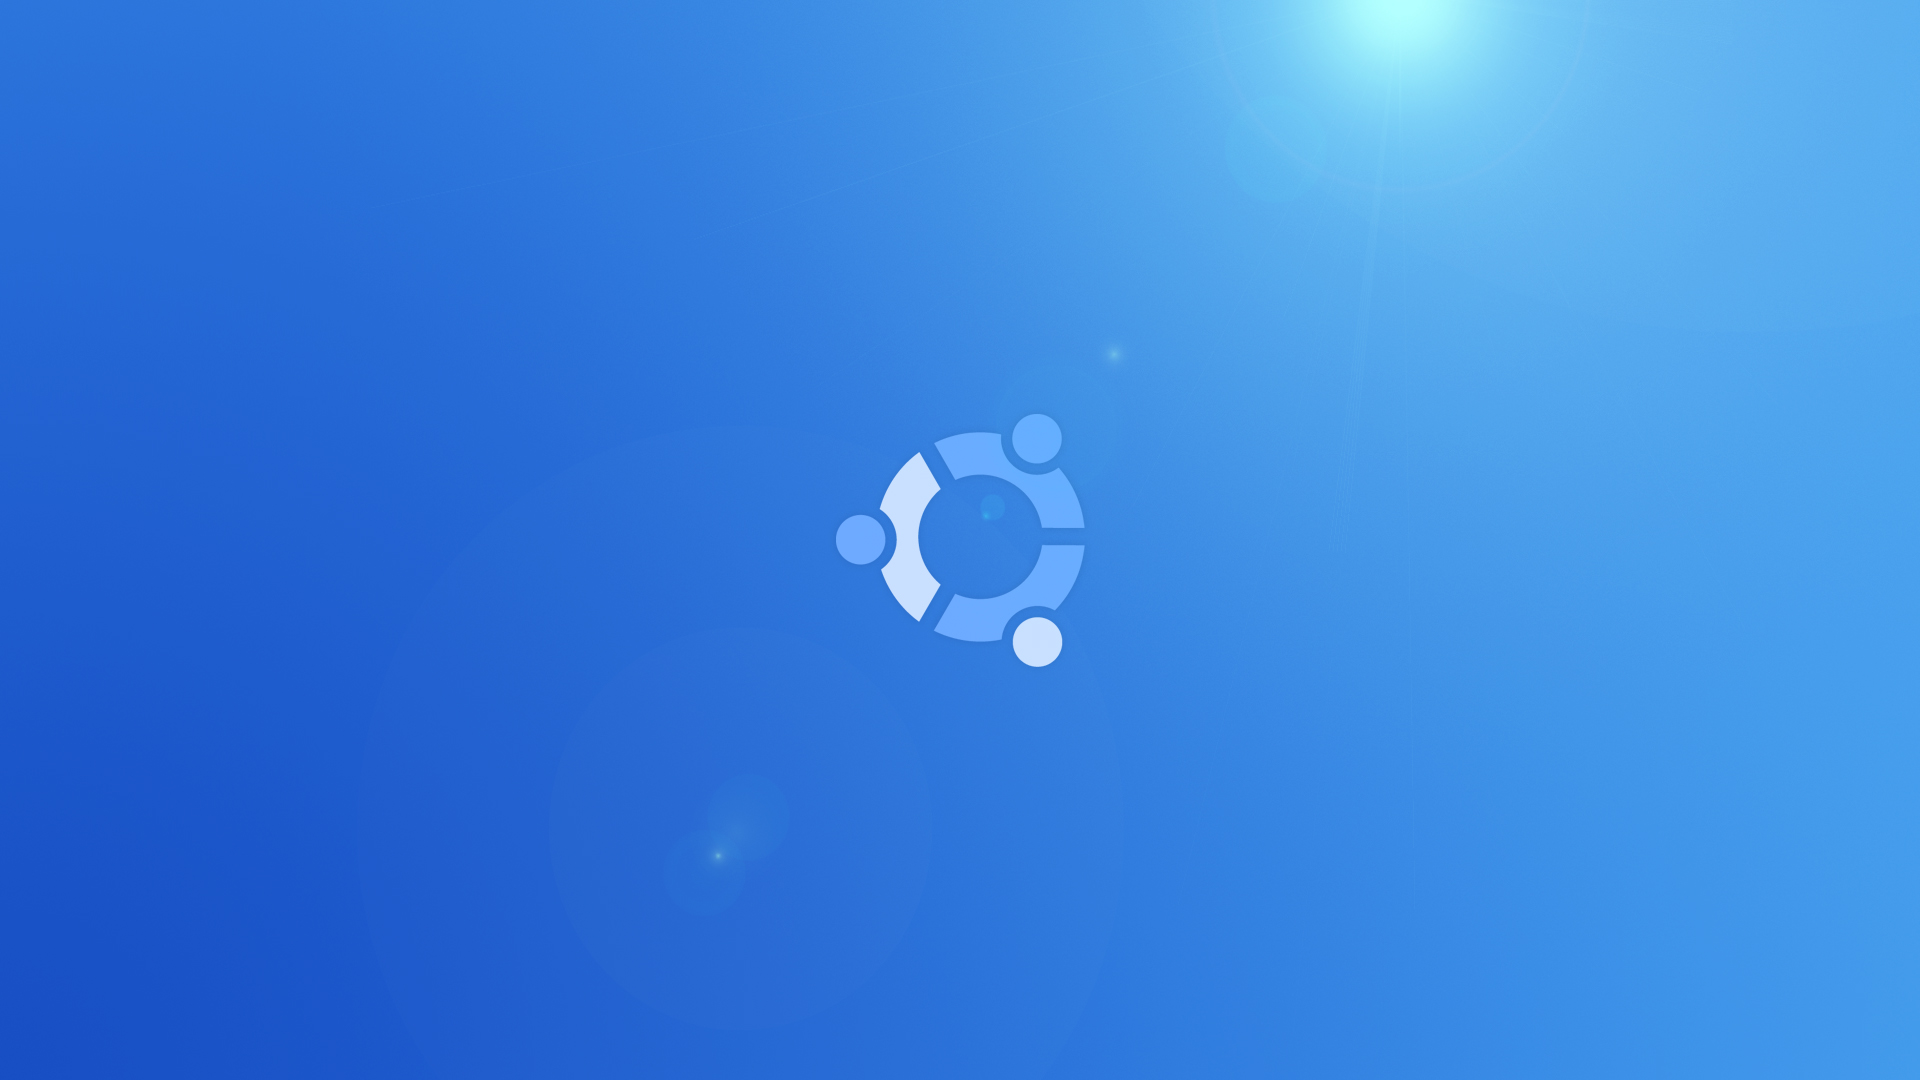 ubuntu fondo de pantalla,azul,tiempo de día,azul cobalto,cielo,agua